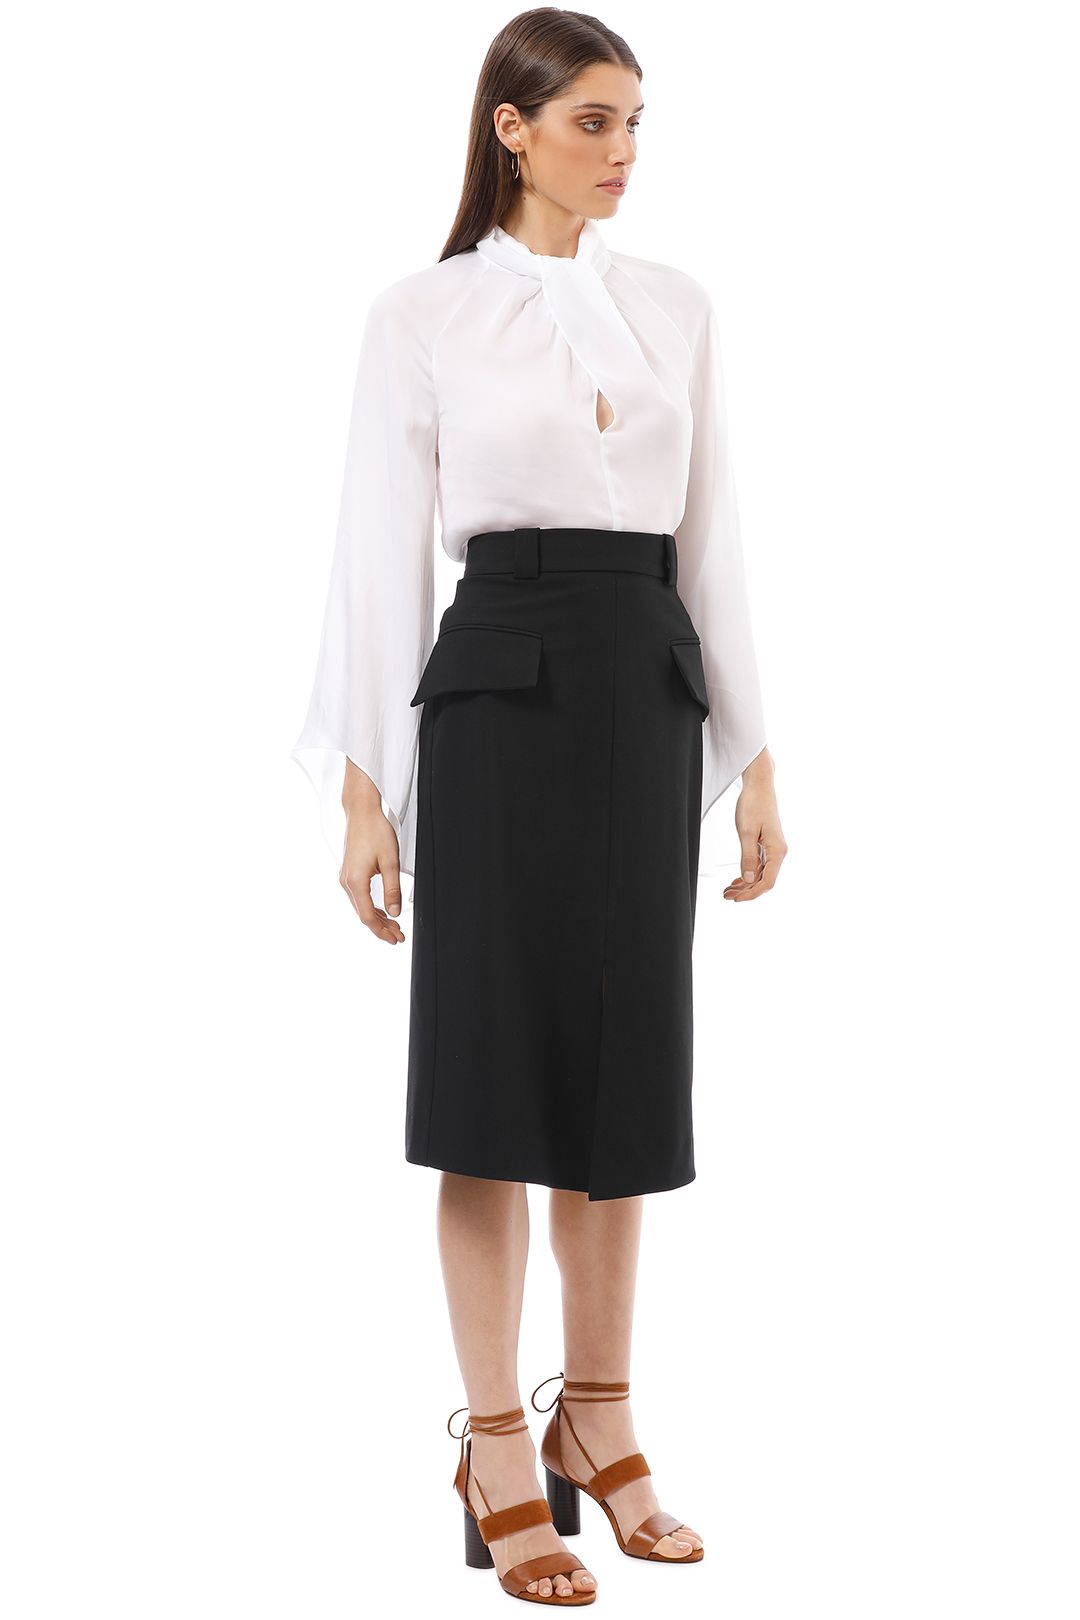 Cue - Split Front A-Line Skirt - Black - Side